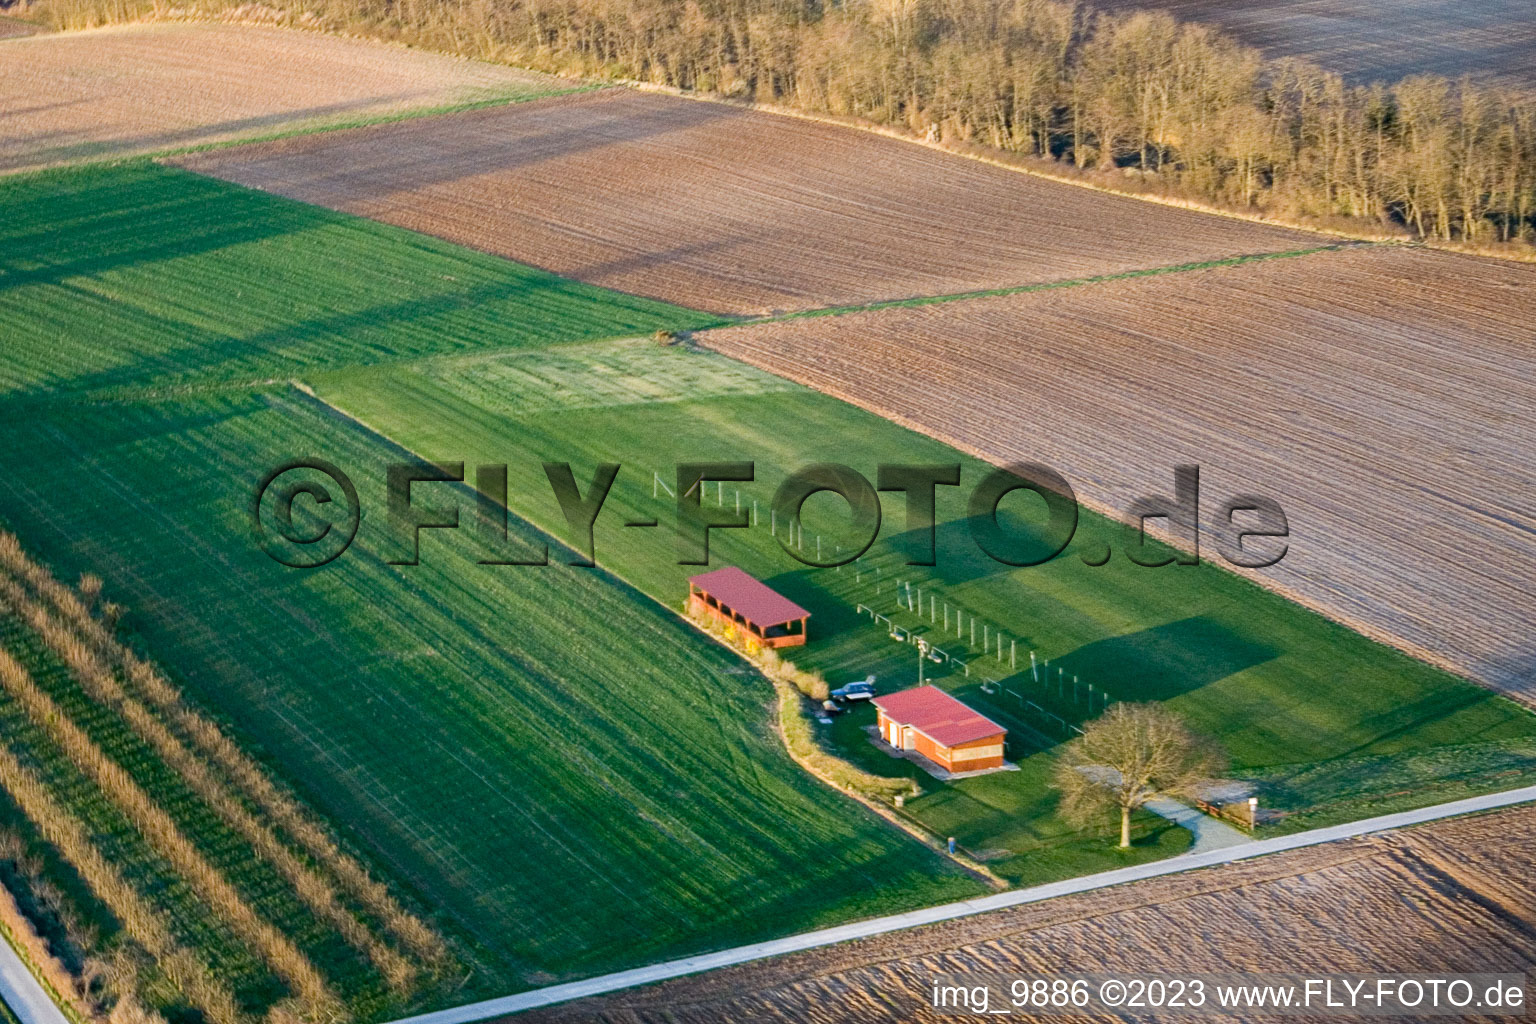 Aérodrome modèle à Freckenfeld dans le département Rhénanie-Palatinat, Allemagne hors des airs